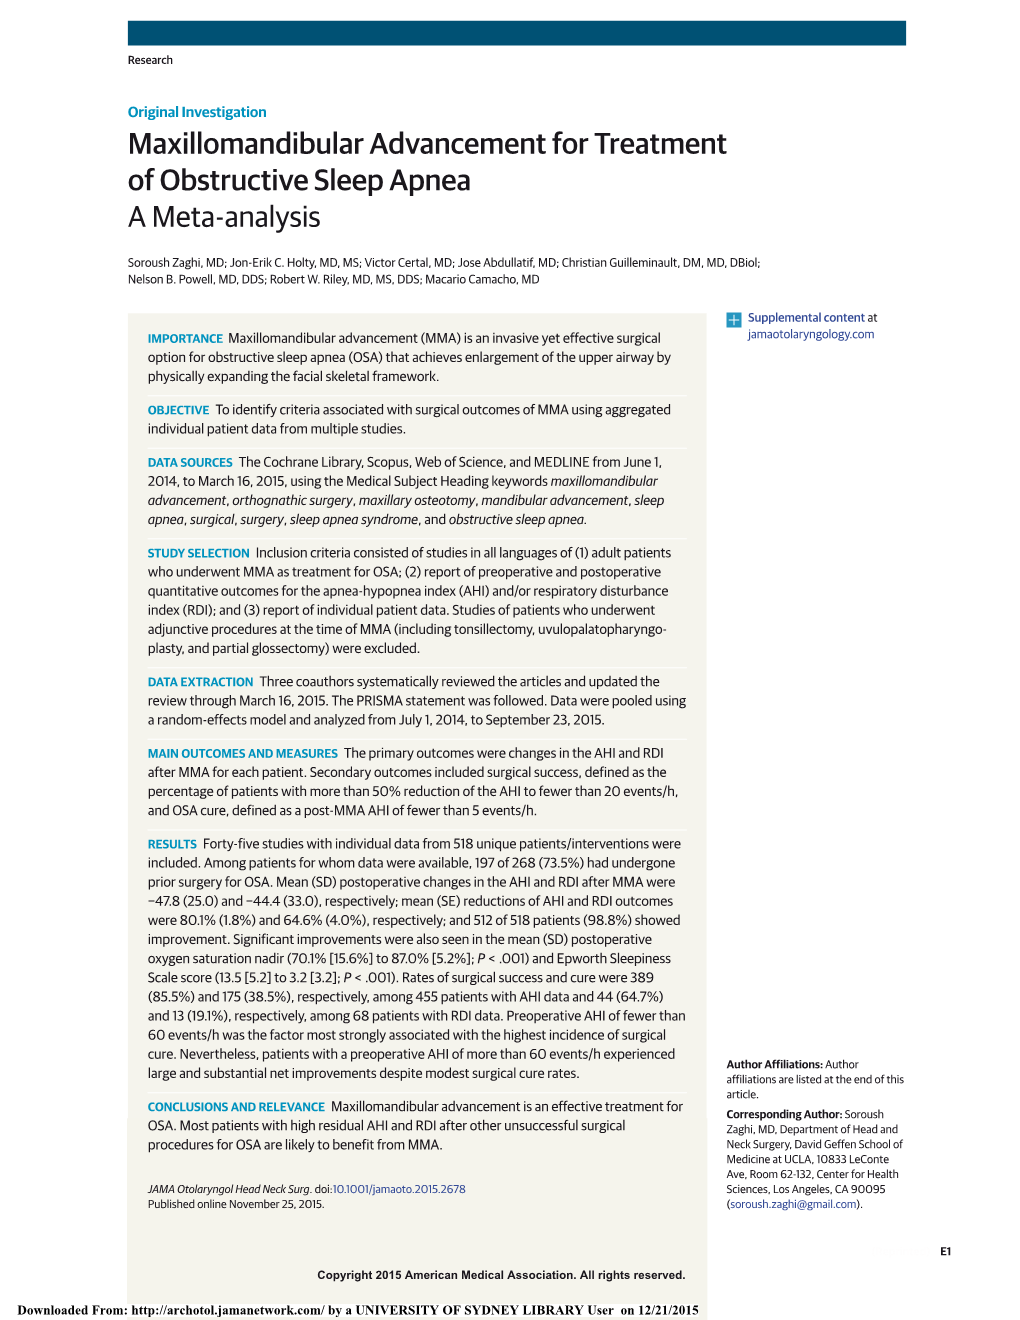 Maxillomandibular Advancement for Treatment of Obstructive Sleep Apnea a Meta-Analysis